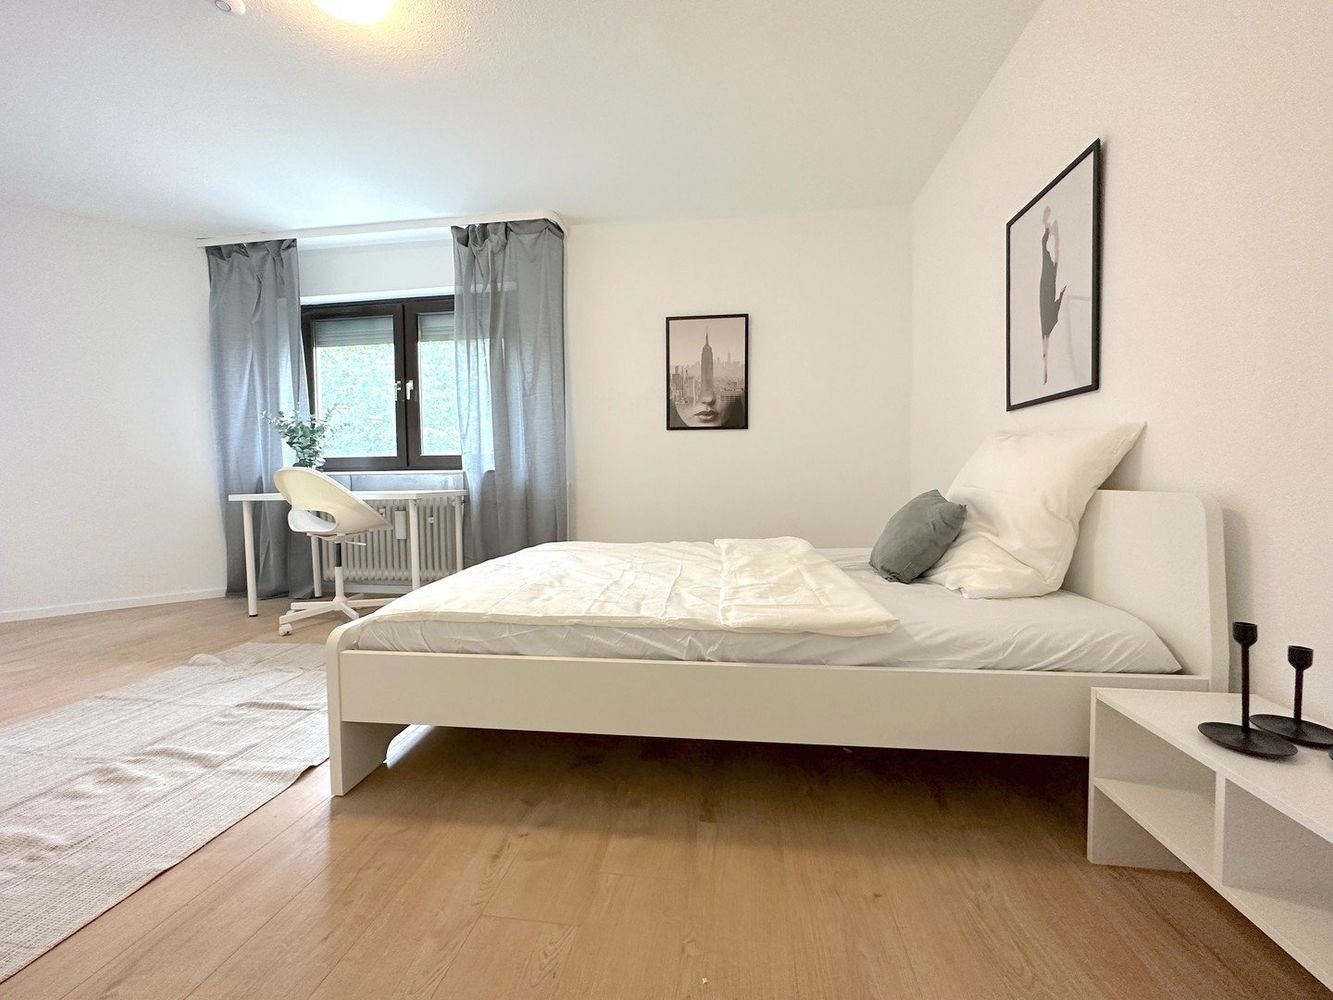 Erstbezug nach Sanierung - Möblierte WG-Zimmer in Frankfurt 3 person shared flat